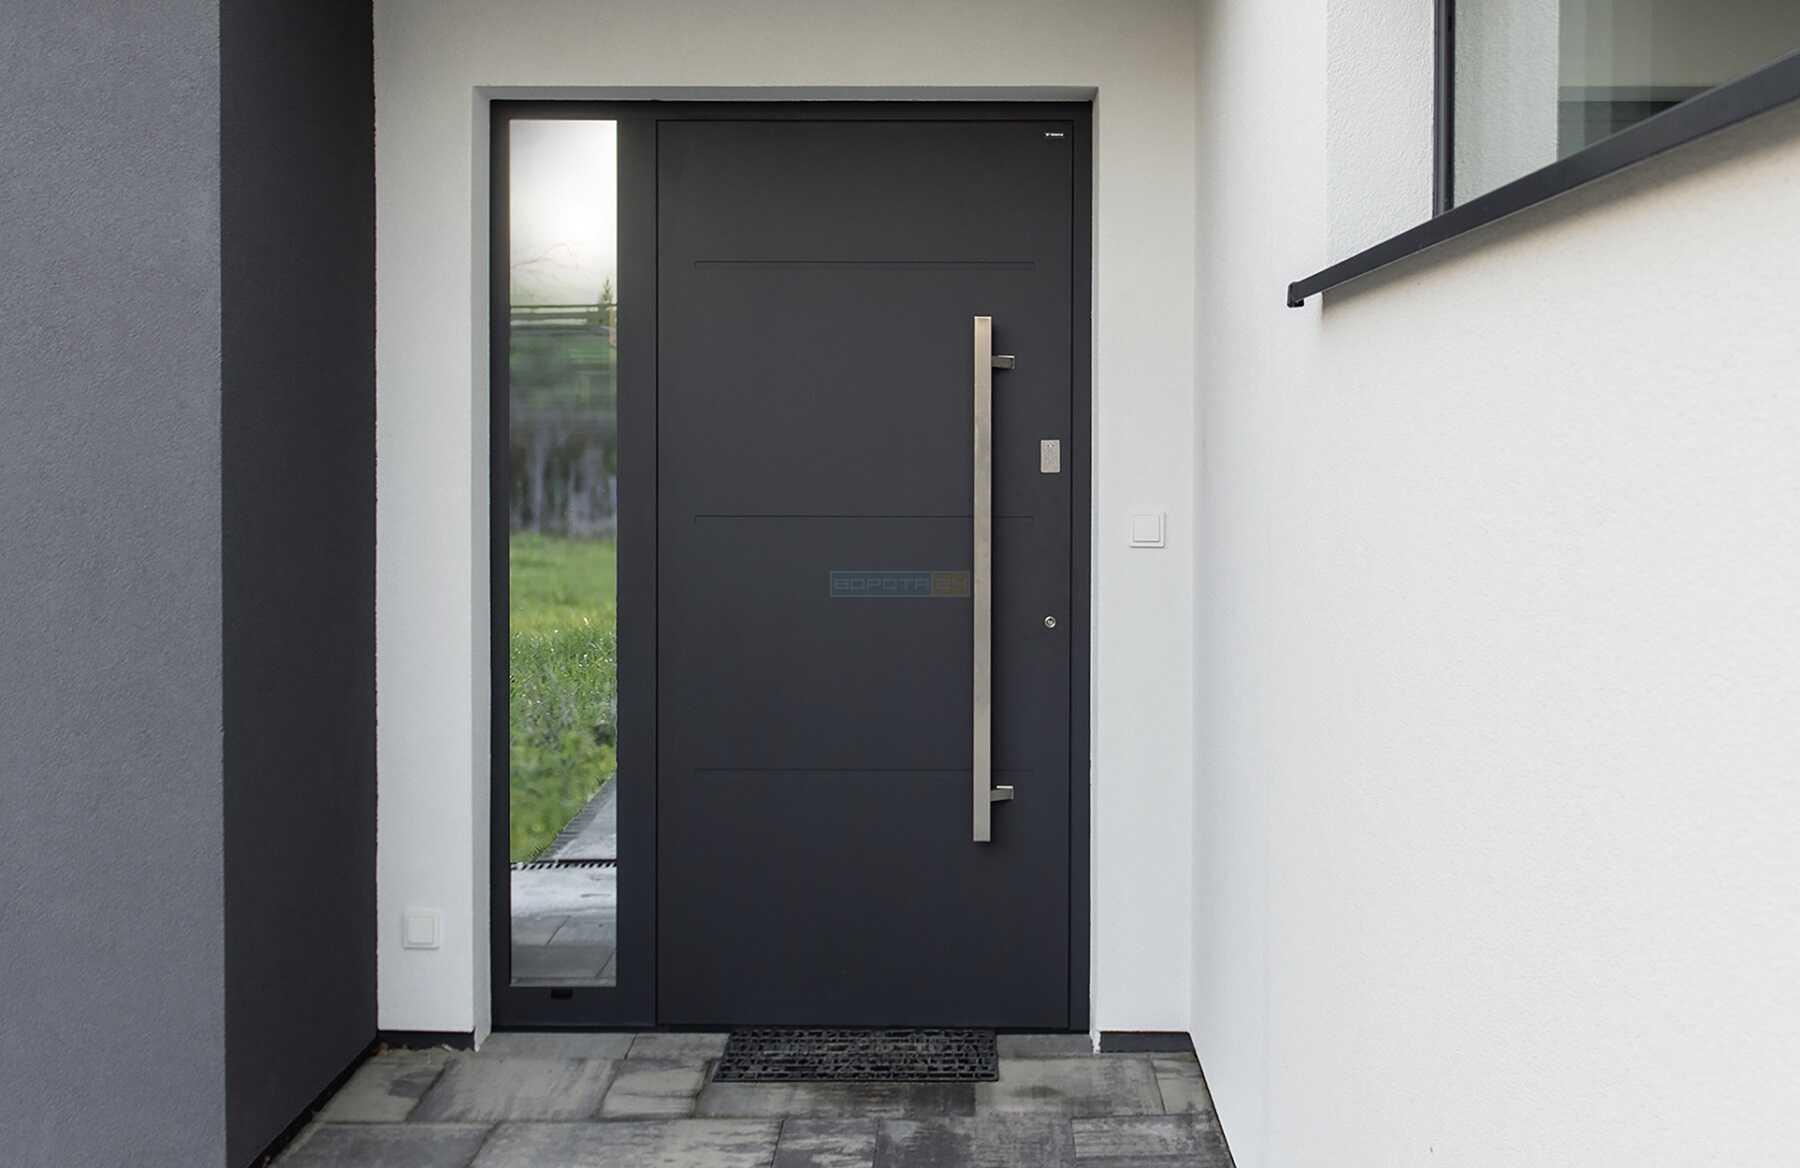 Сучасні красиві вуличні двері до приватного будинку - європейський виробник RYTERNA, WISNIOWSKI - алюмінієві теплі зовнішні вхідні групи з вікнами, склом